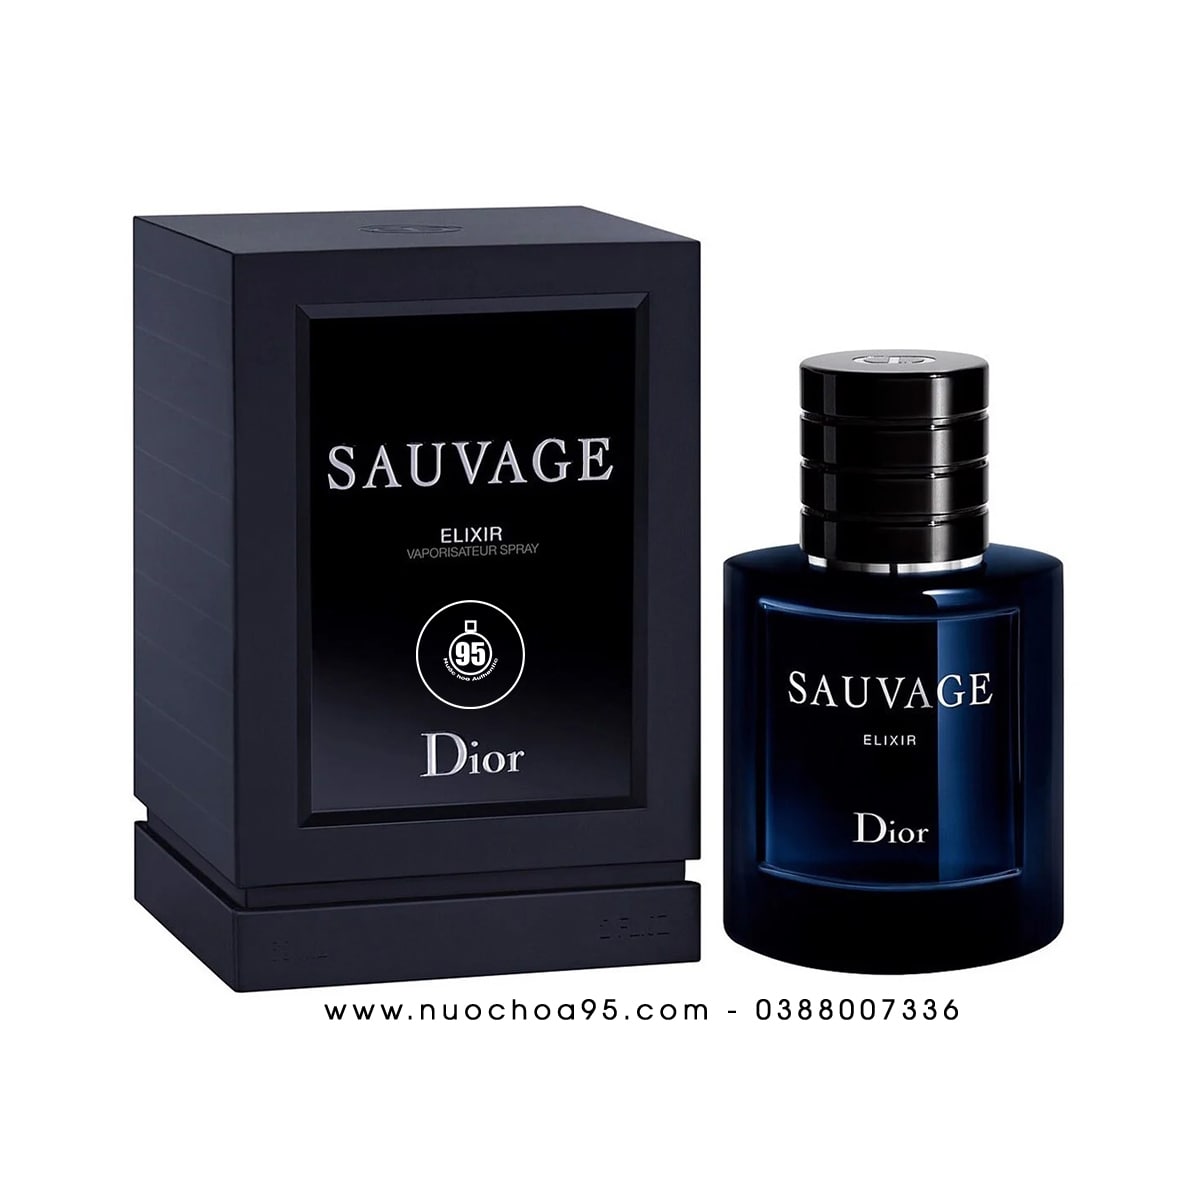 ماكياج أناييس 𝑀𝑎𝑞𝑢𝑖𝑙𝑙𝑎𝑔𝑒 𝐴𝑛𝑎𝑖𝑠𝑠  Parfum Sauvage Dior rouge  pour femme disponible   Facebook